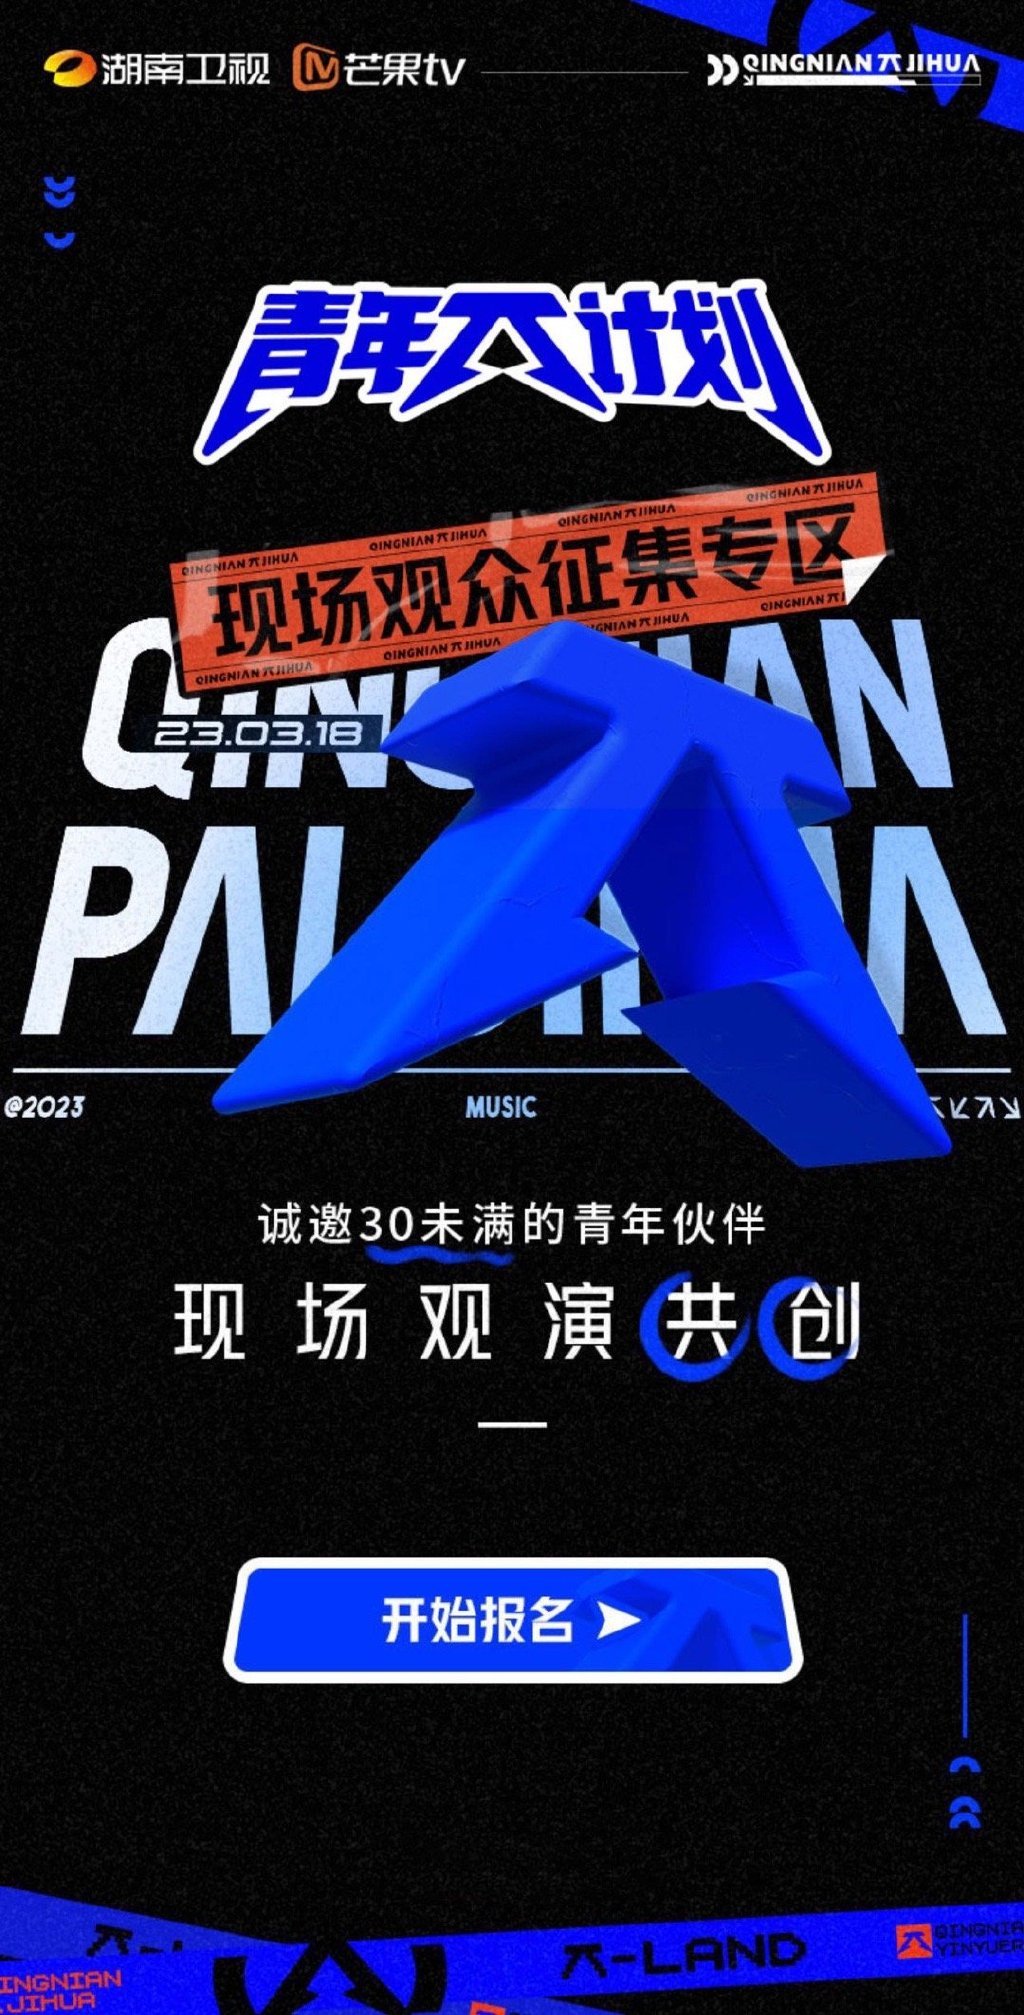 中国备受瞩目的王牌音综与奇趣实验类真人秀8月强势回归！ Astro全马独家与中国同步播放《2022中国好声音》与《嗨放派2》！ | Press Release | Mediaroom | Astro